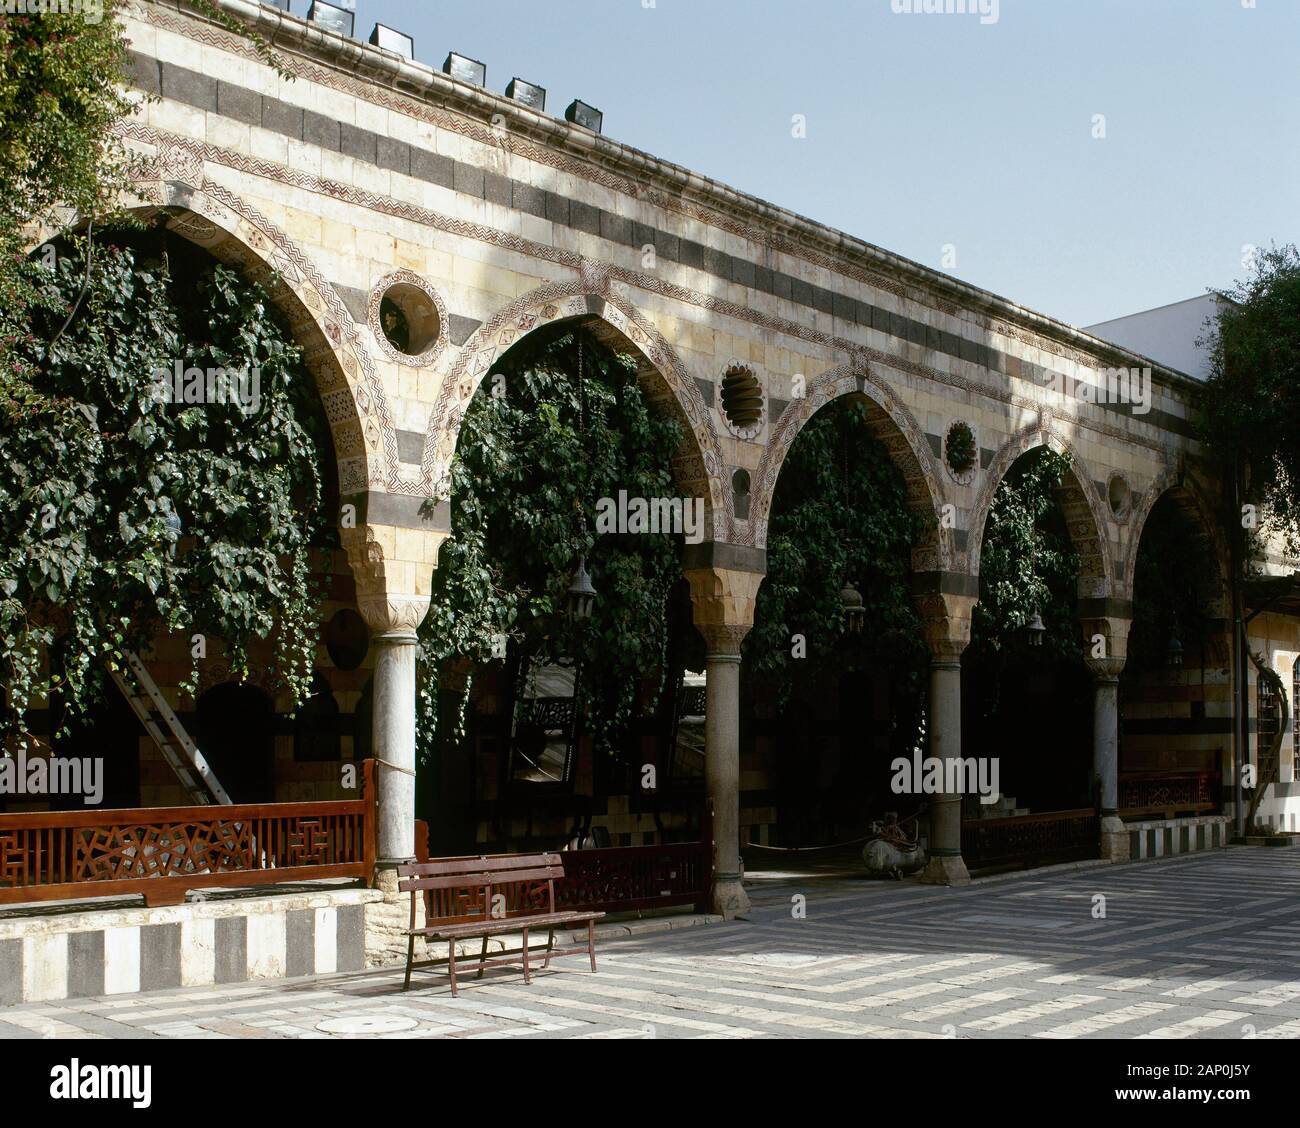 Siria, Repubblica Araba. Damasco. Azm Palace. Impero ottomano era. È stato costruito nel 1749. Residence per come'ad Pasha al-Azm, governatore di Damasco. La facciata settentrionale del cortile. Attualmente il Museo delle Arti e Tradizioni Popolari. Foto Stock